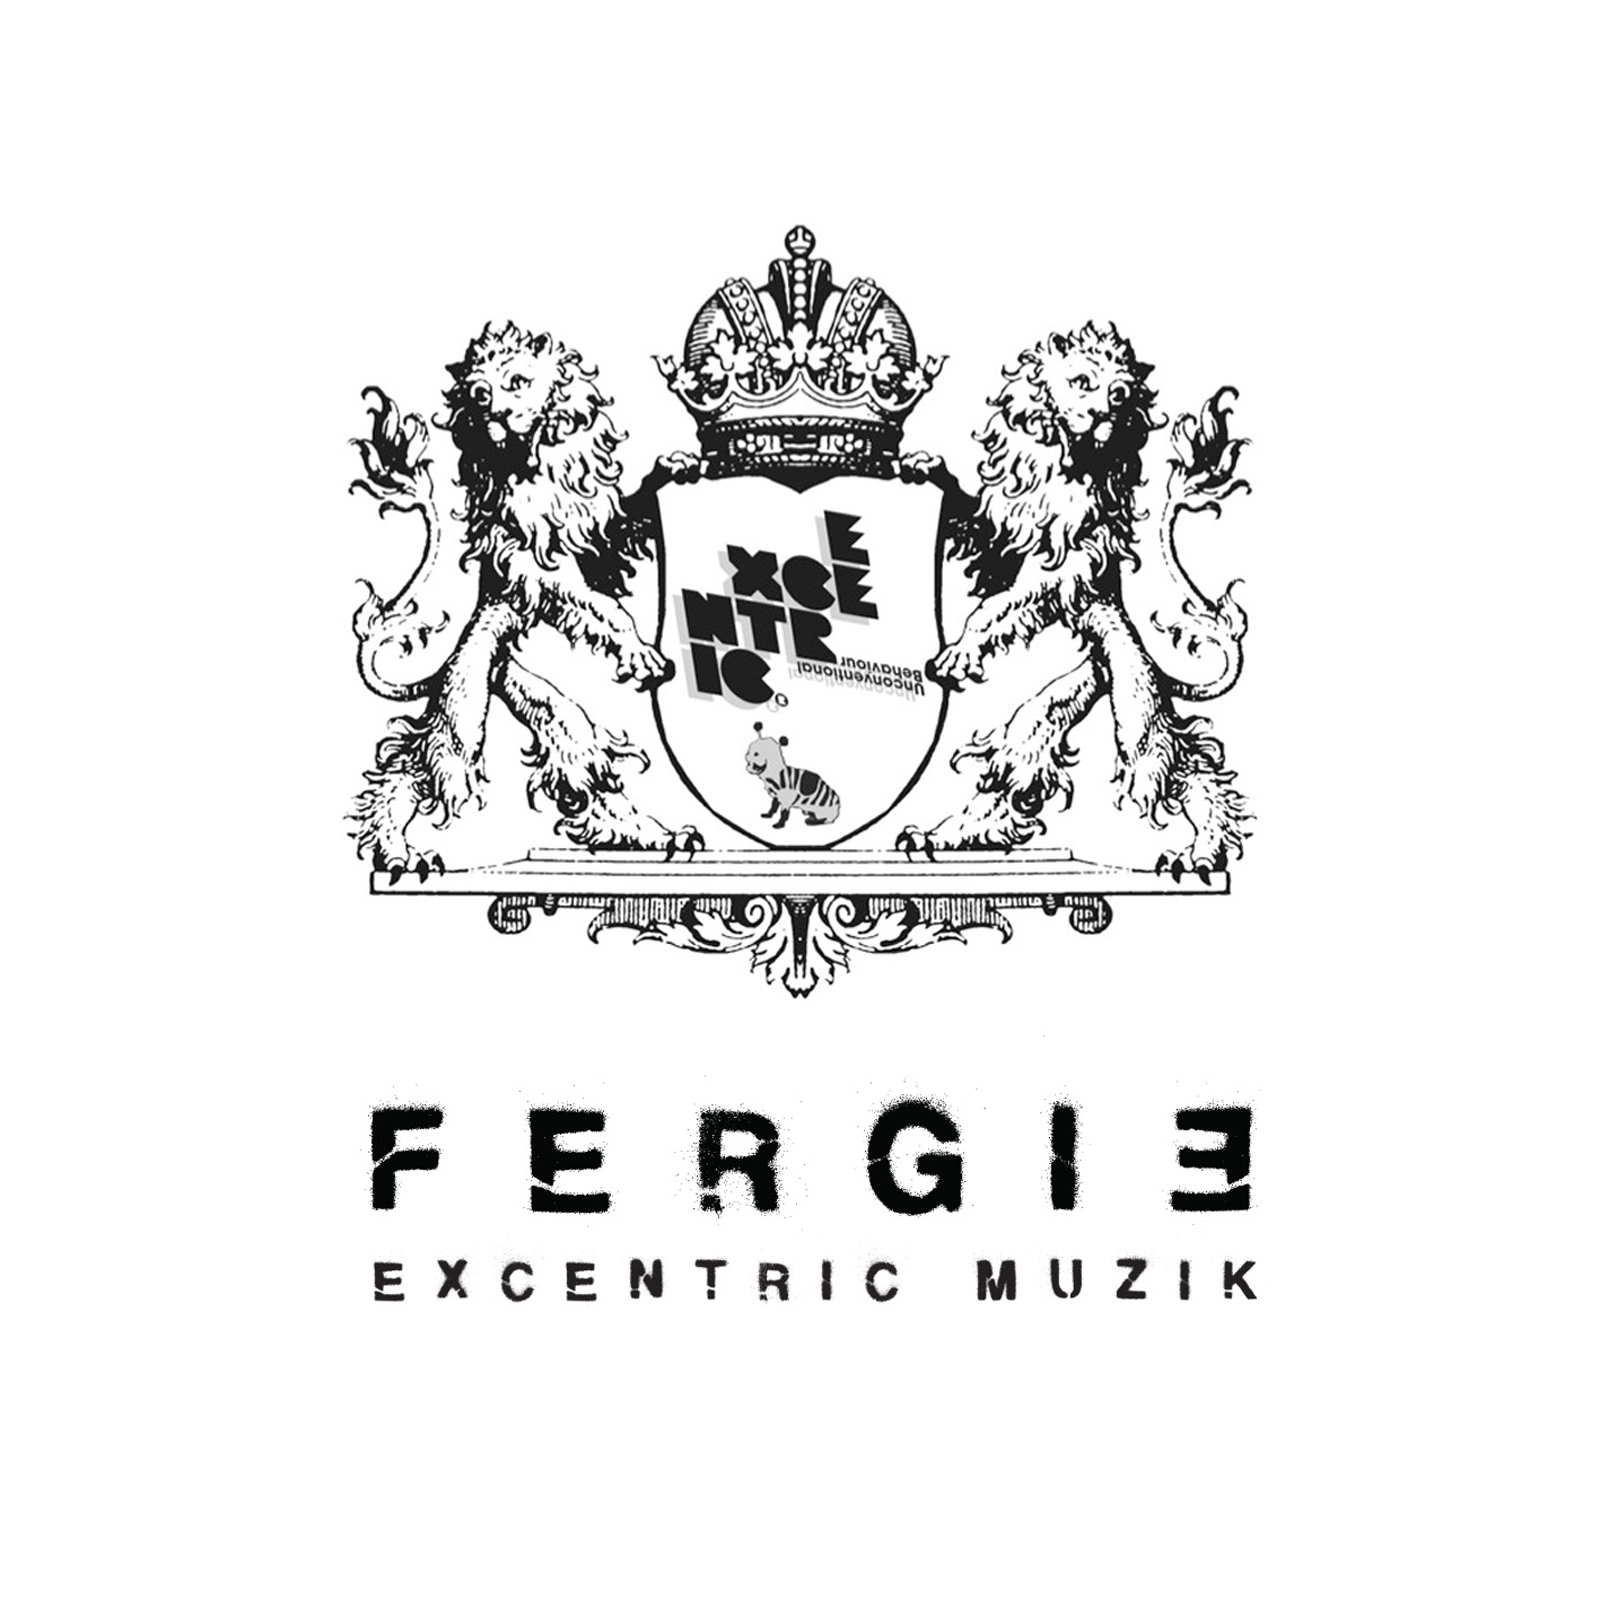 Fergie's Excentric Muzik Selection